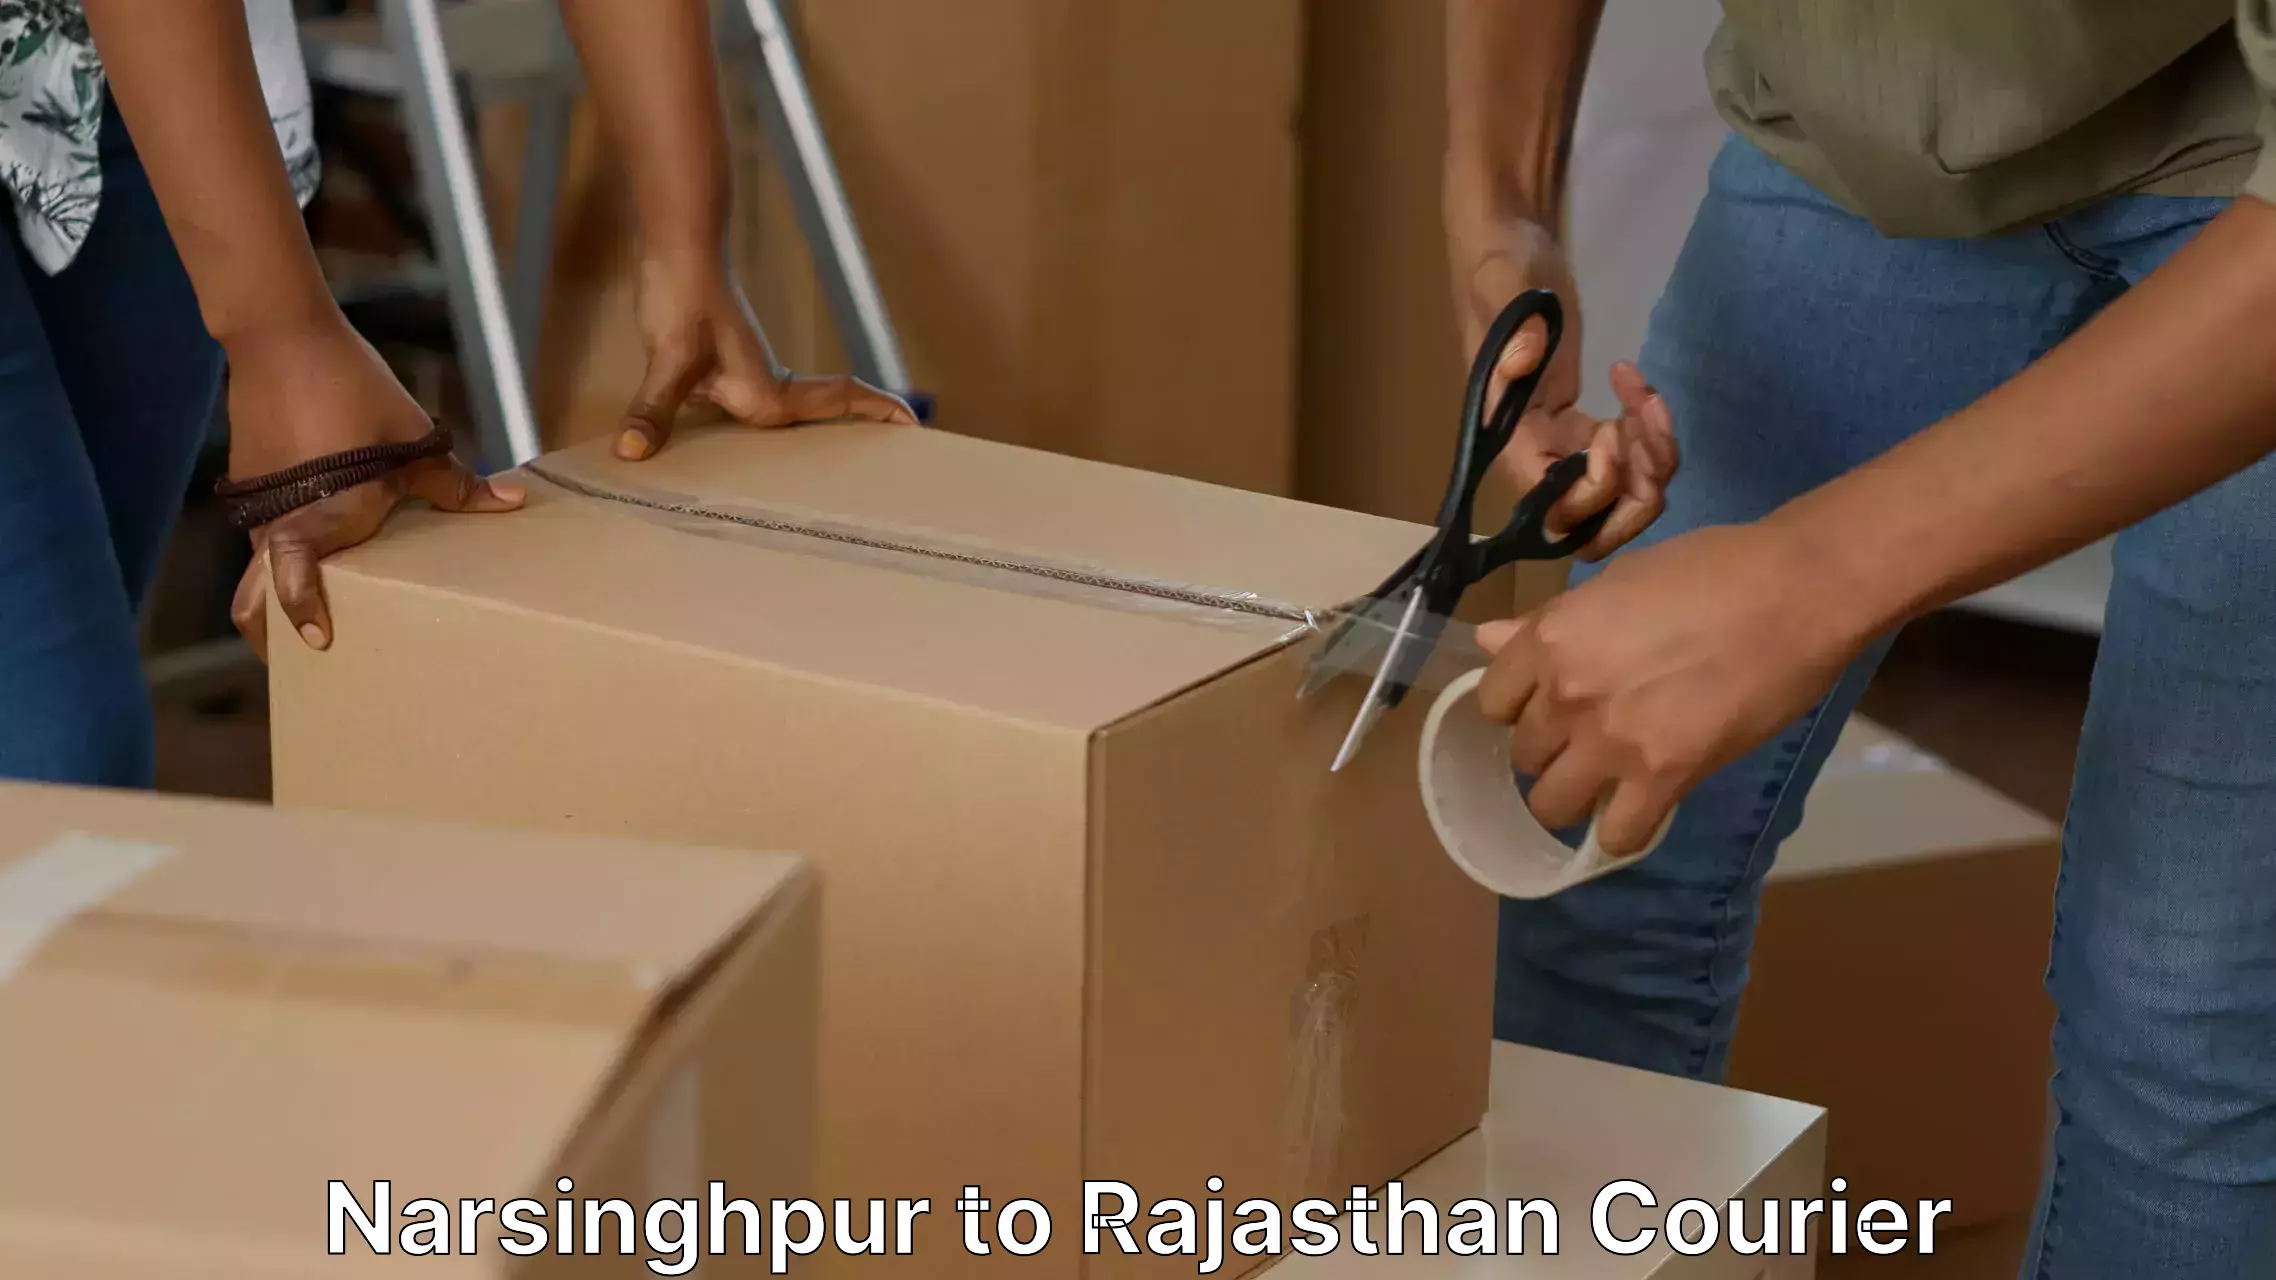 Furniture transport services Narsinghpur to Paota